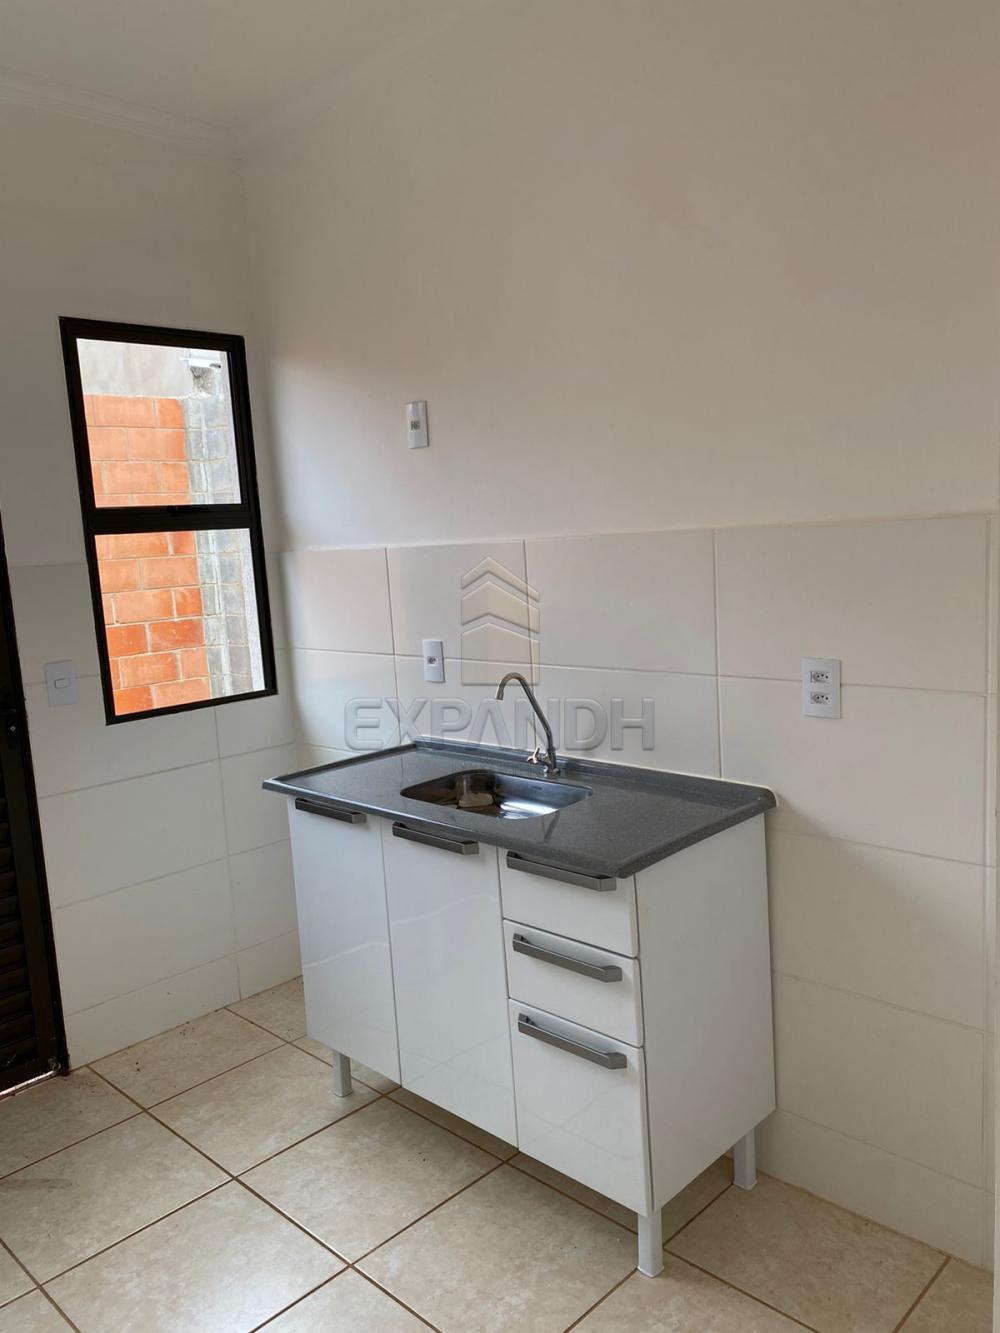 Alugar Casas / Condomínio em Sertãozinho R$ 850,00 - Foto 9